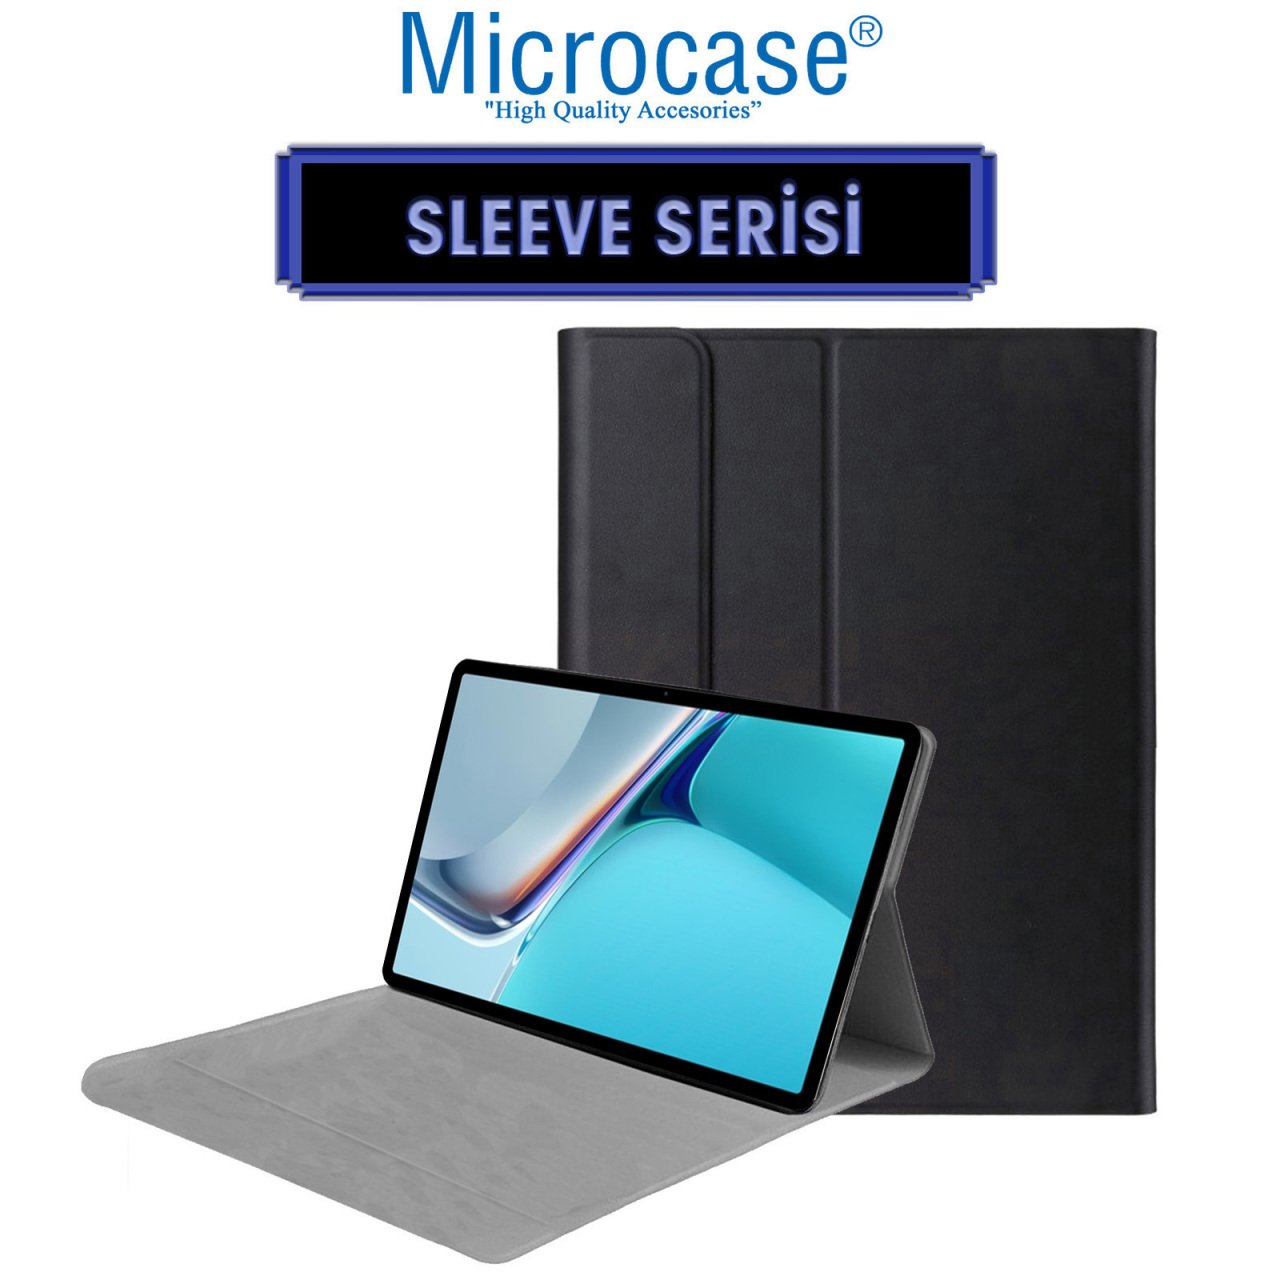 Microcase Huawei Matepad 11 2021 Sleeve Serisi Mıknatıs Kapaklı Standlı Suni Deri Kılıf - Siyah